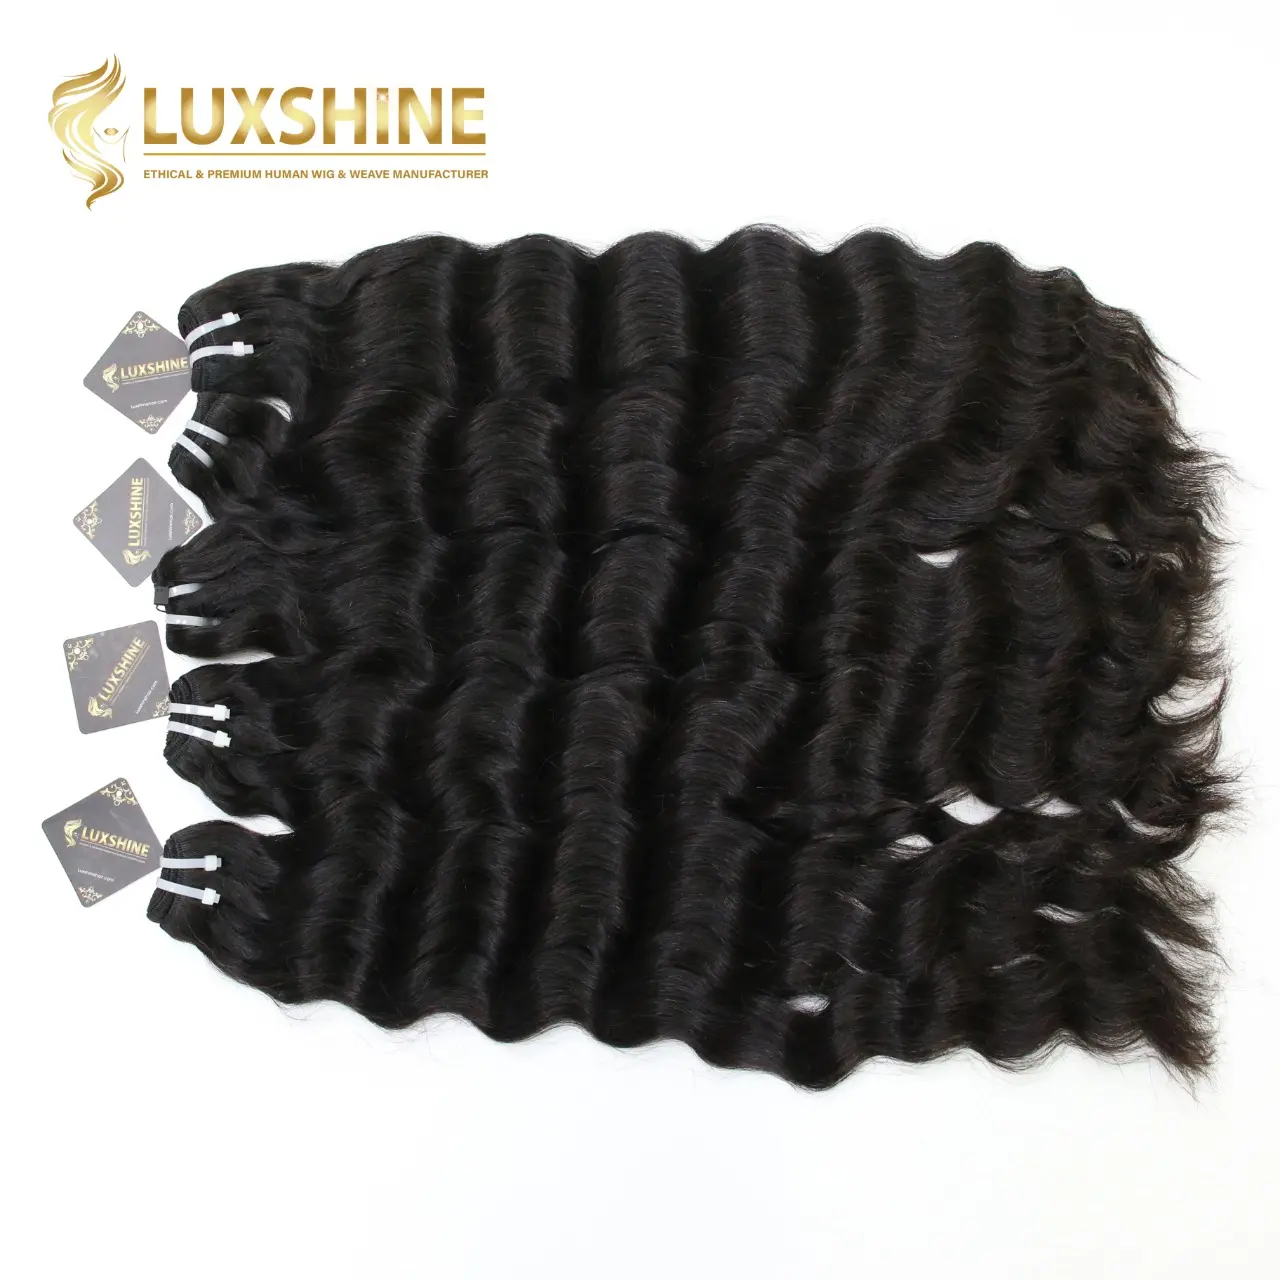 100% Paquete de Armadura de pelo vietnamita en bruto LUXSHINE RUBY máquina trama doble extensiones de cabello humano dibujado